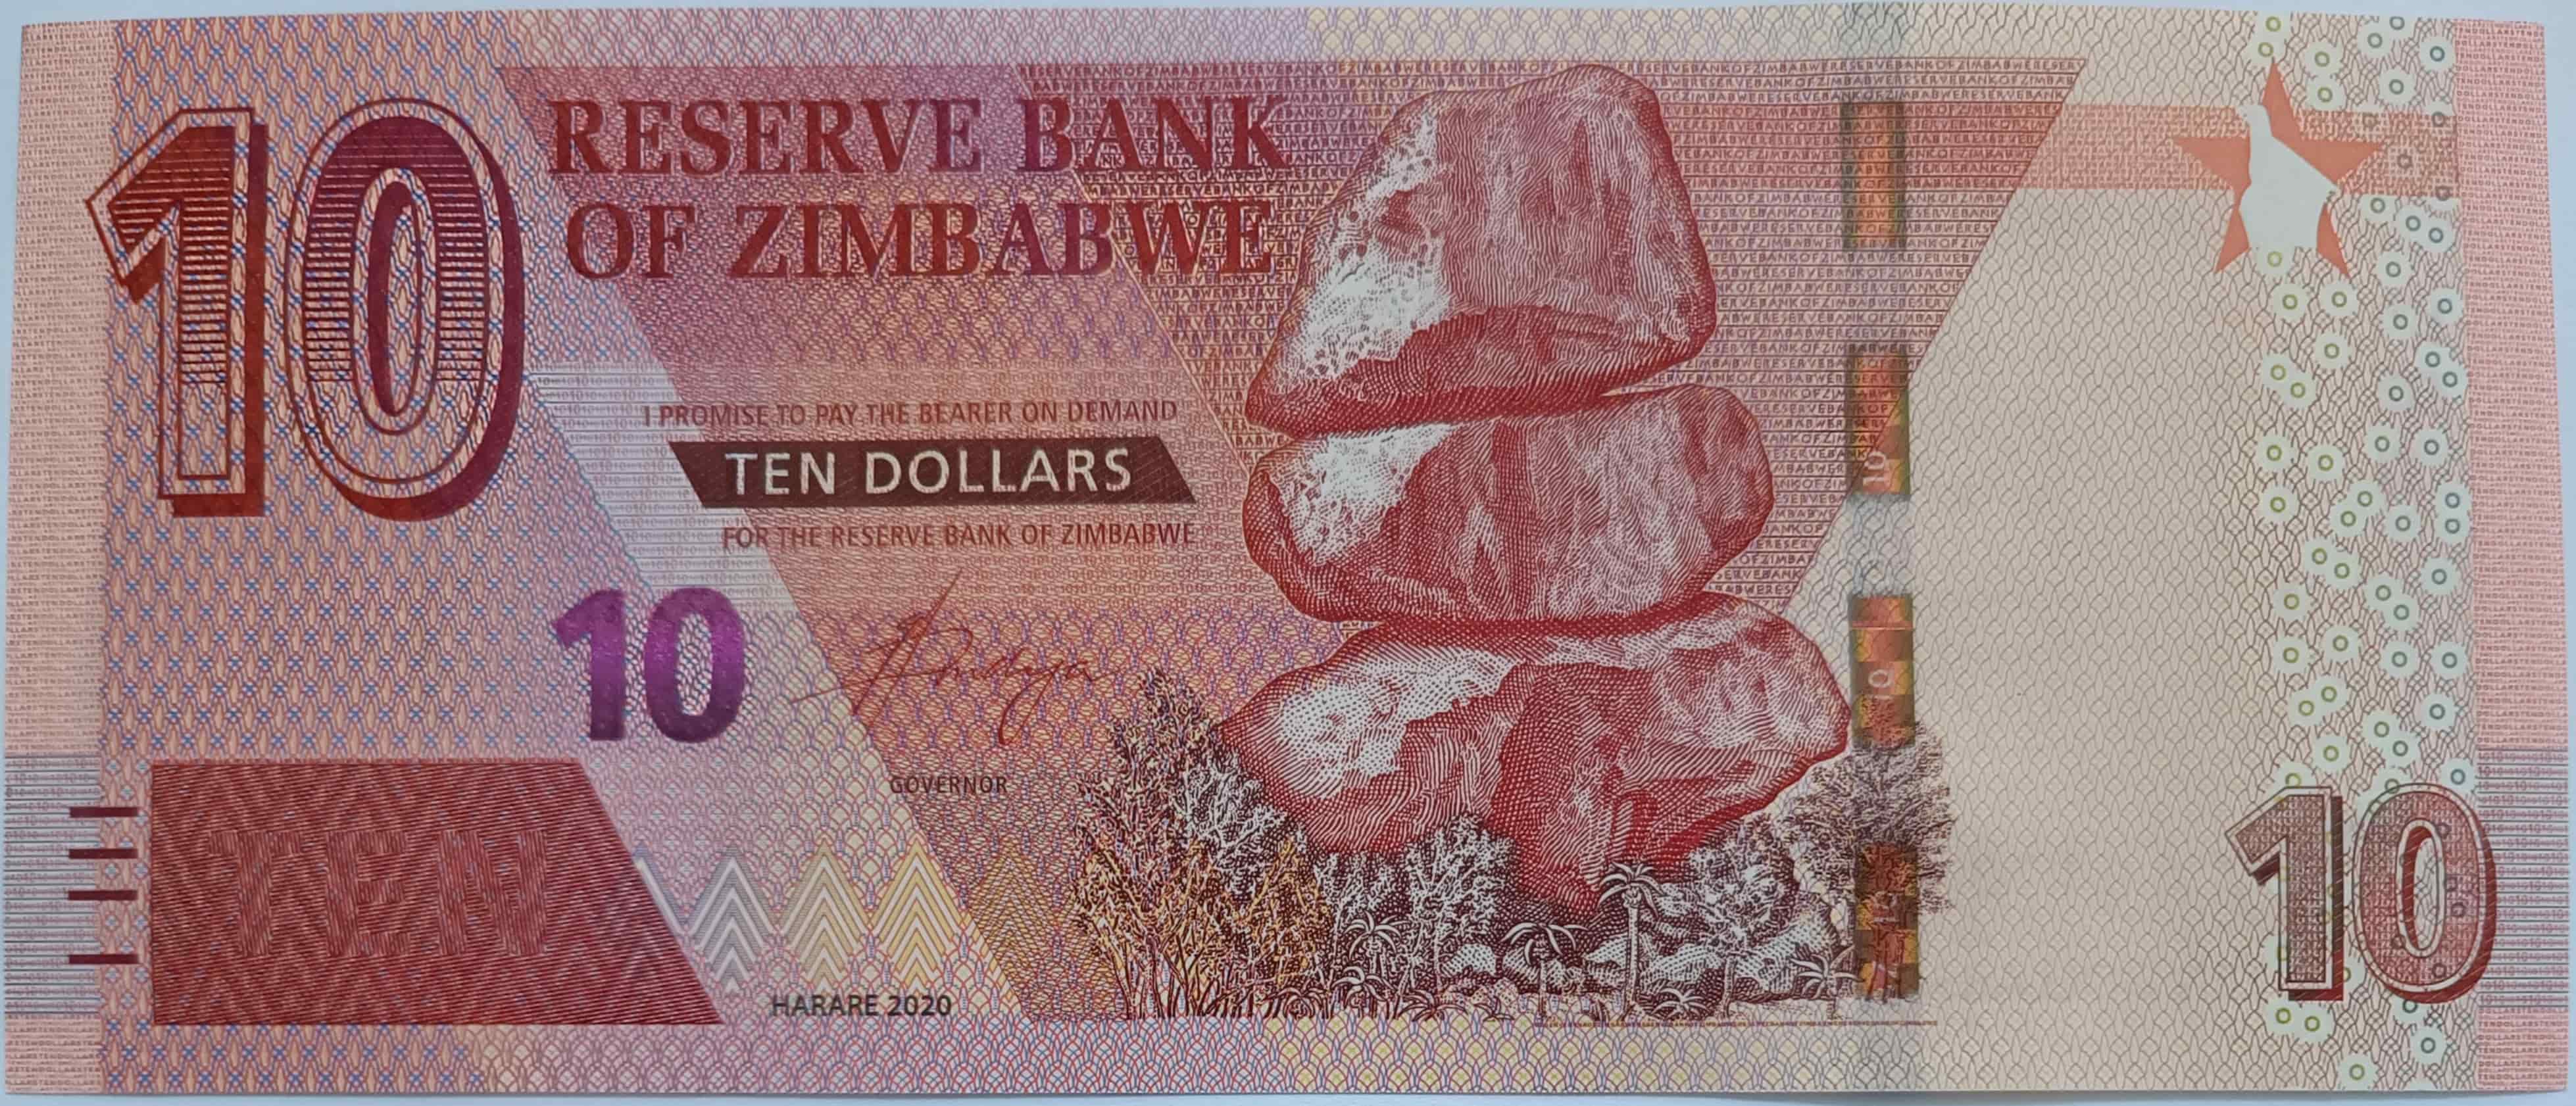 10 dollars 2020 Zimbabwe